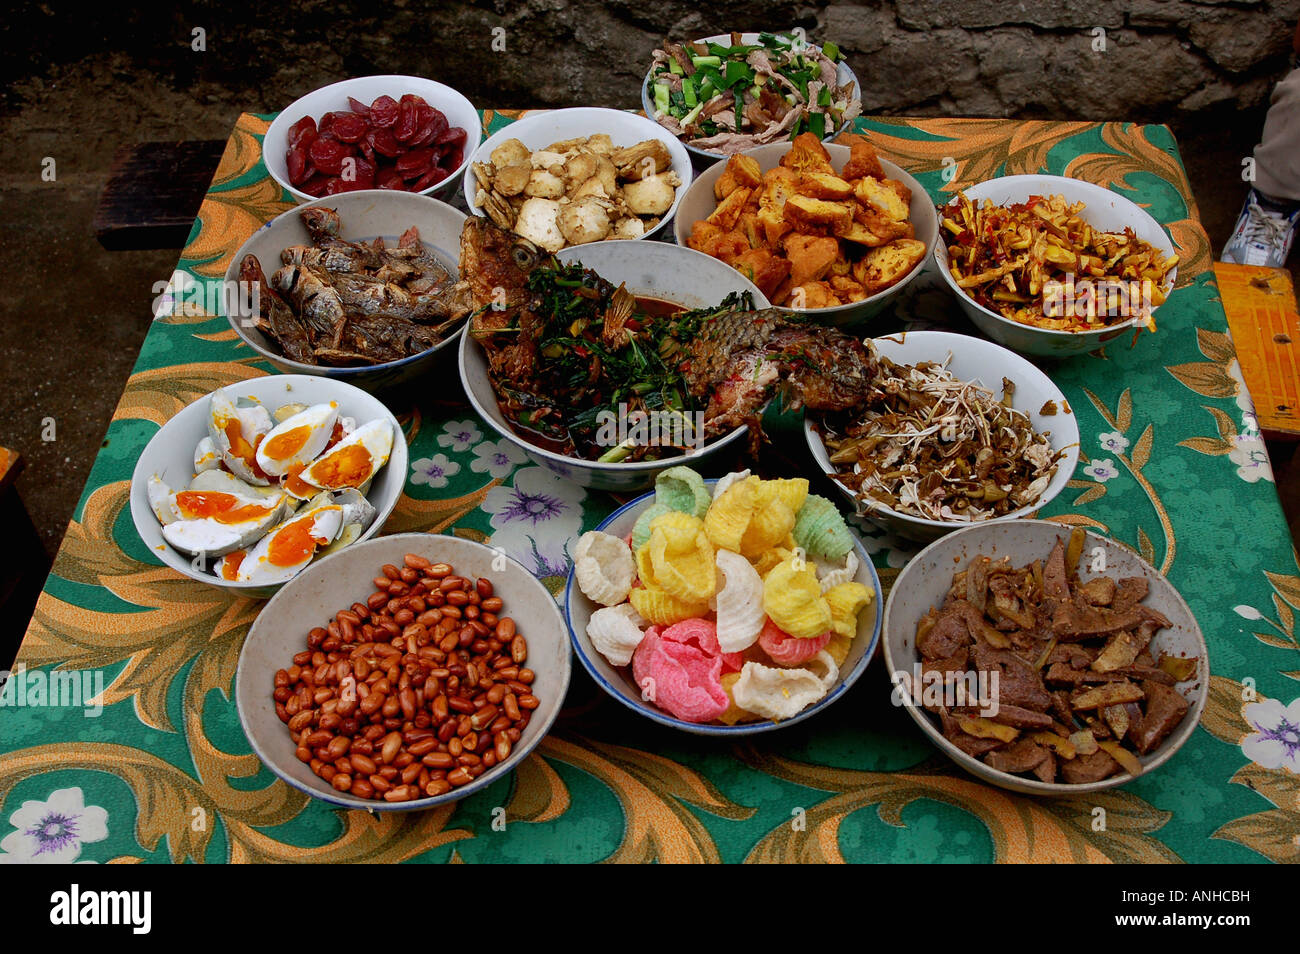 Hani minoría tradicional festival-long street banquete Foto de stock